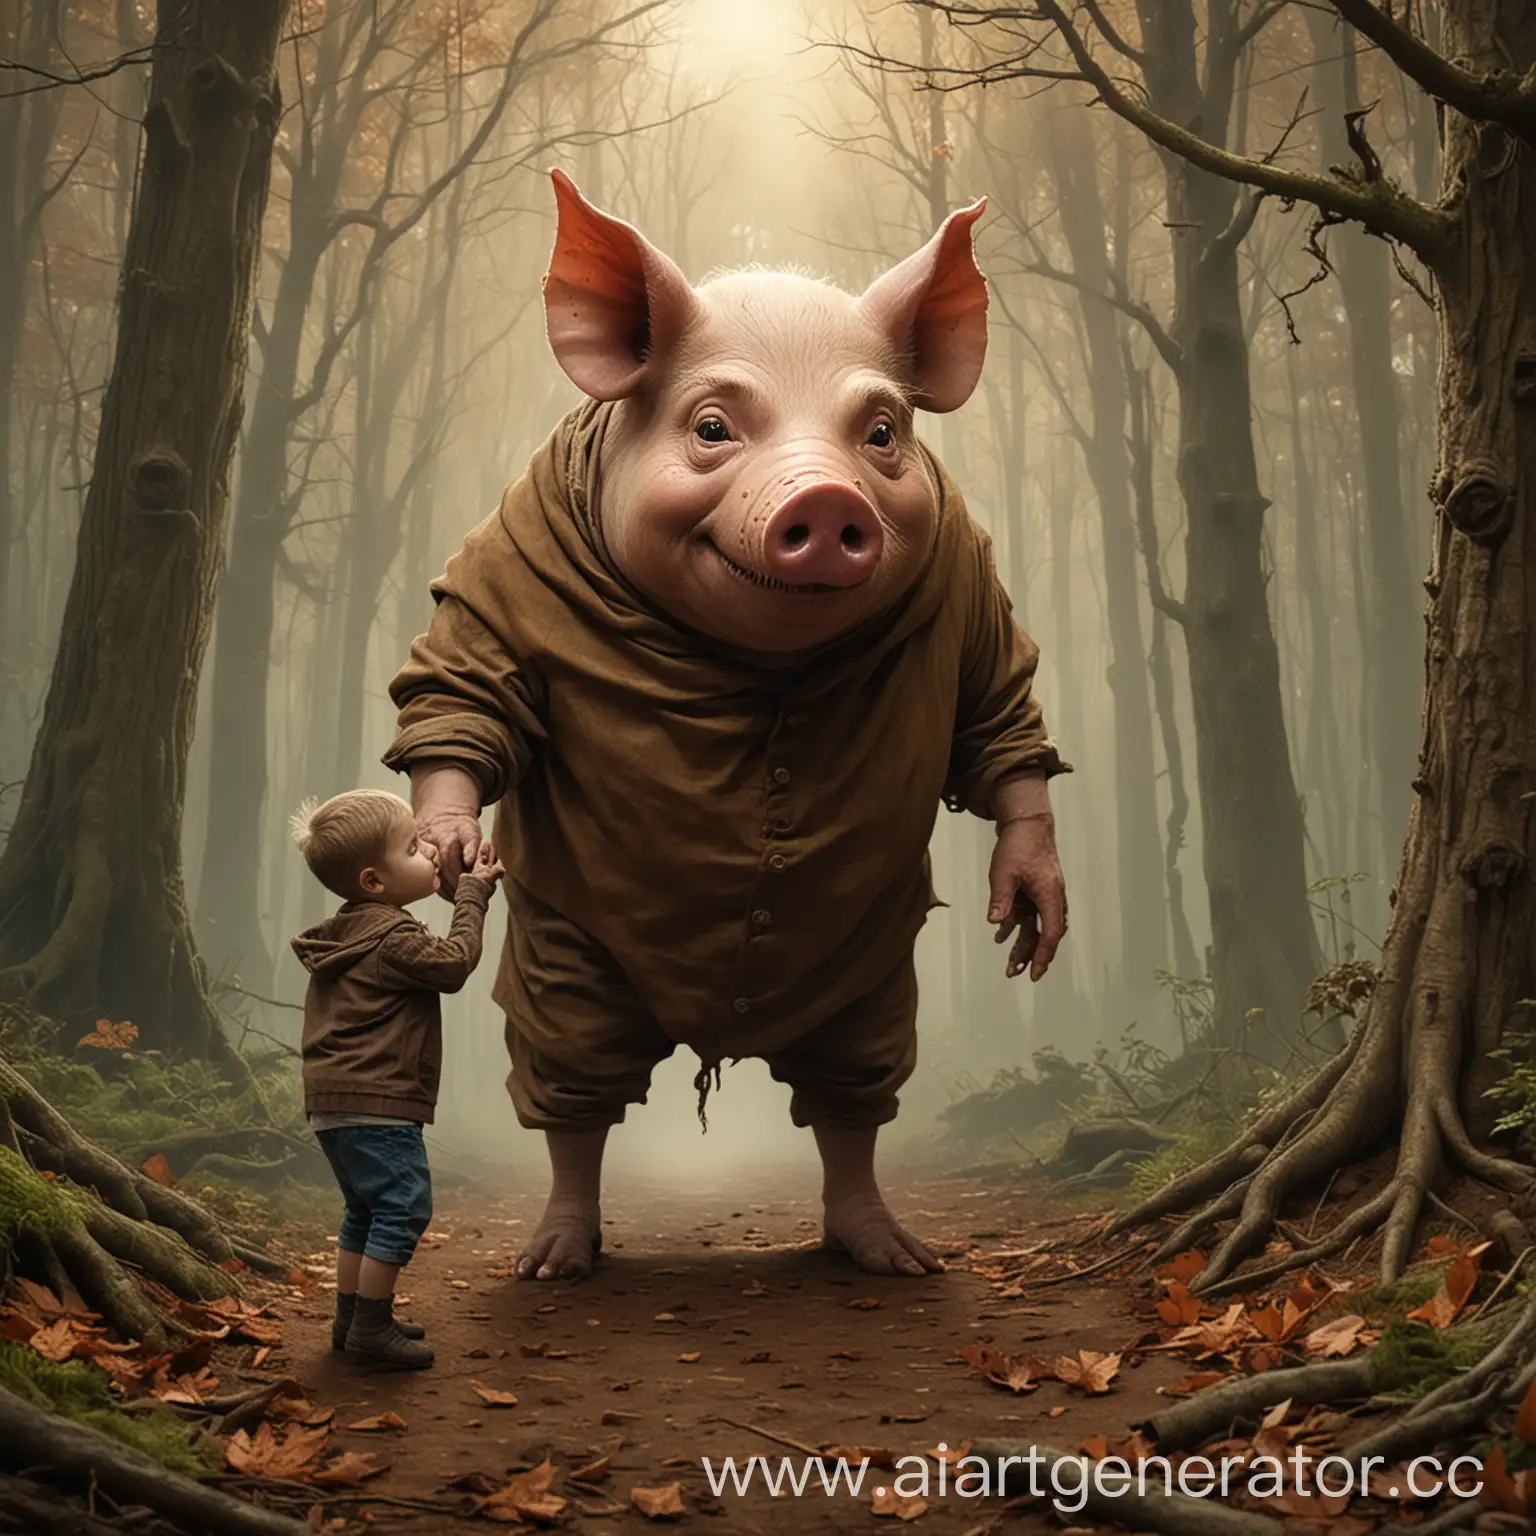 нарисуй жуткий свино человек в коричневой мантии заманивает ребенка в лес